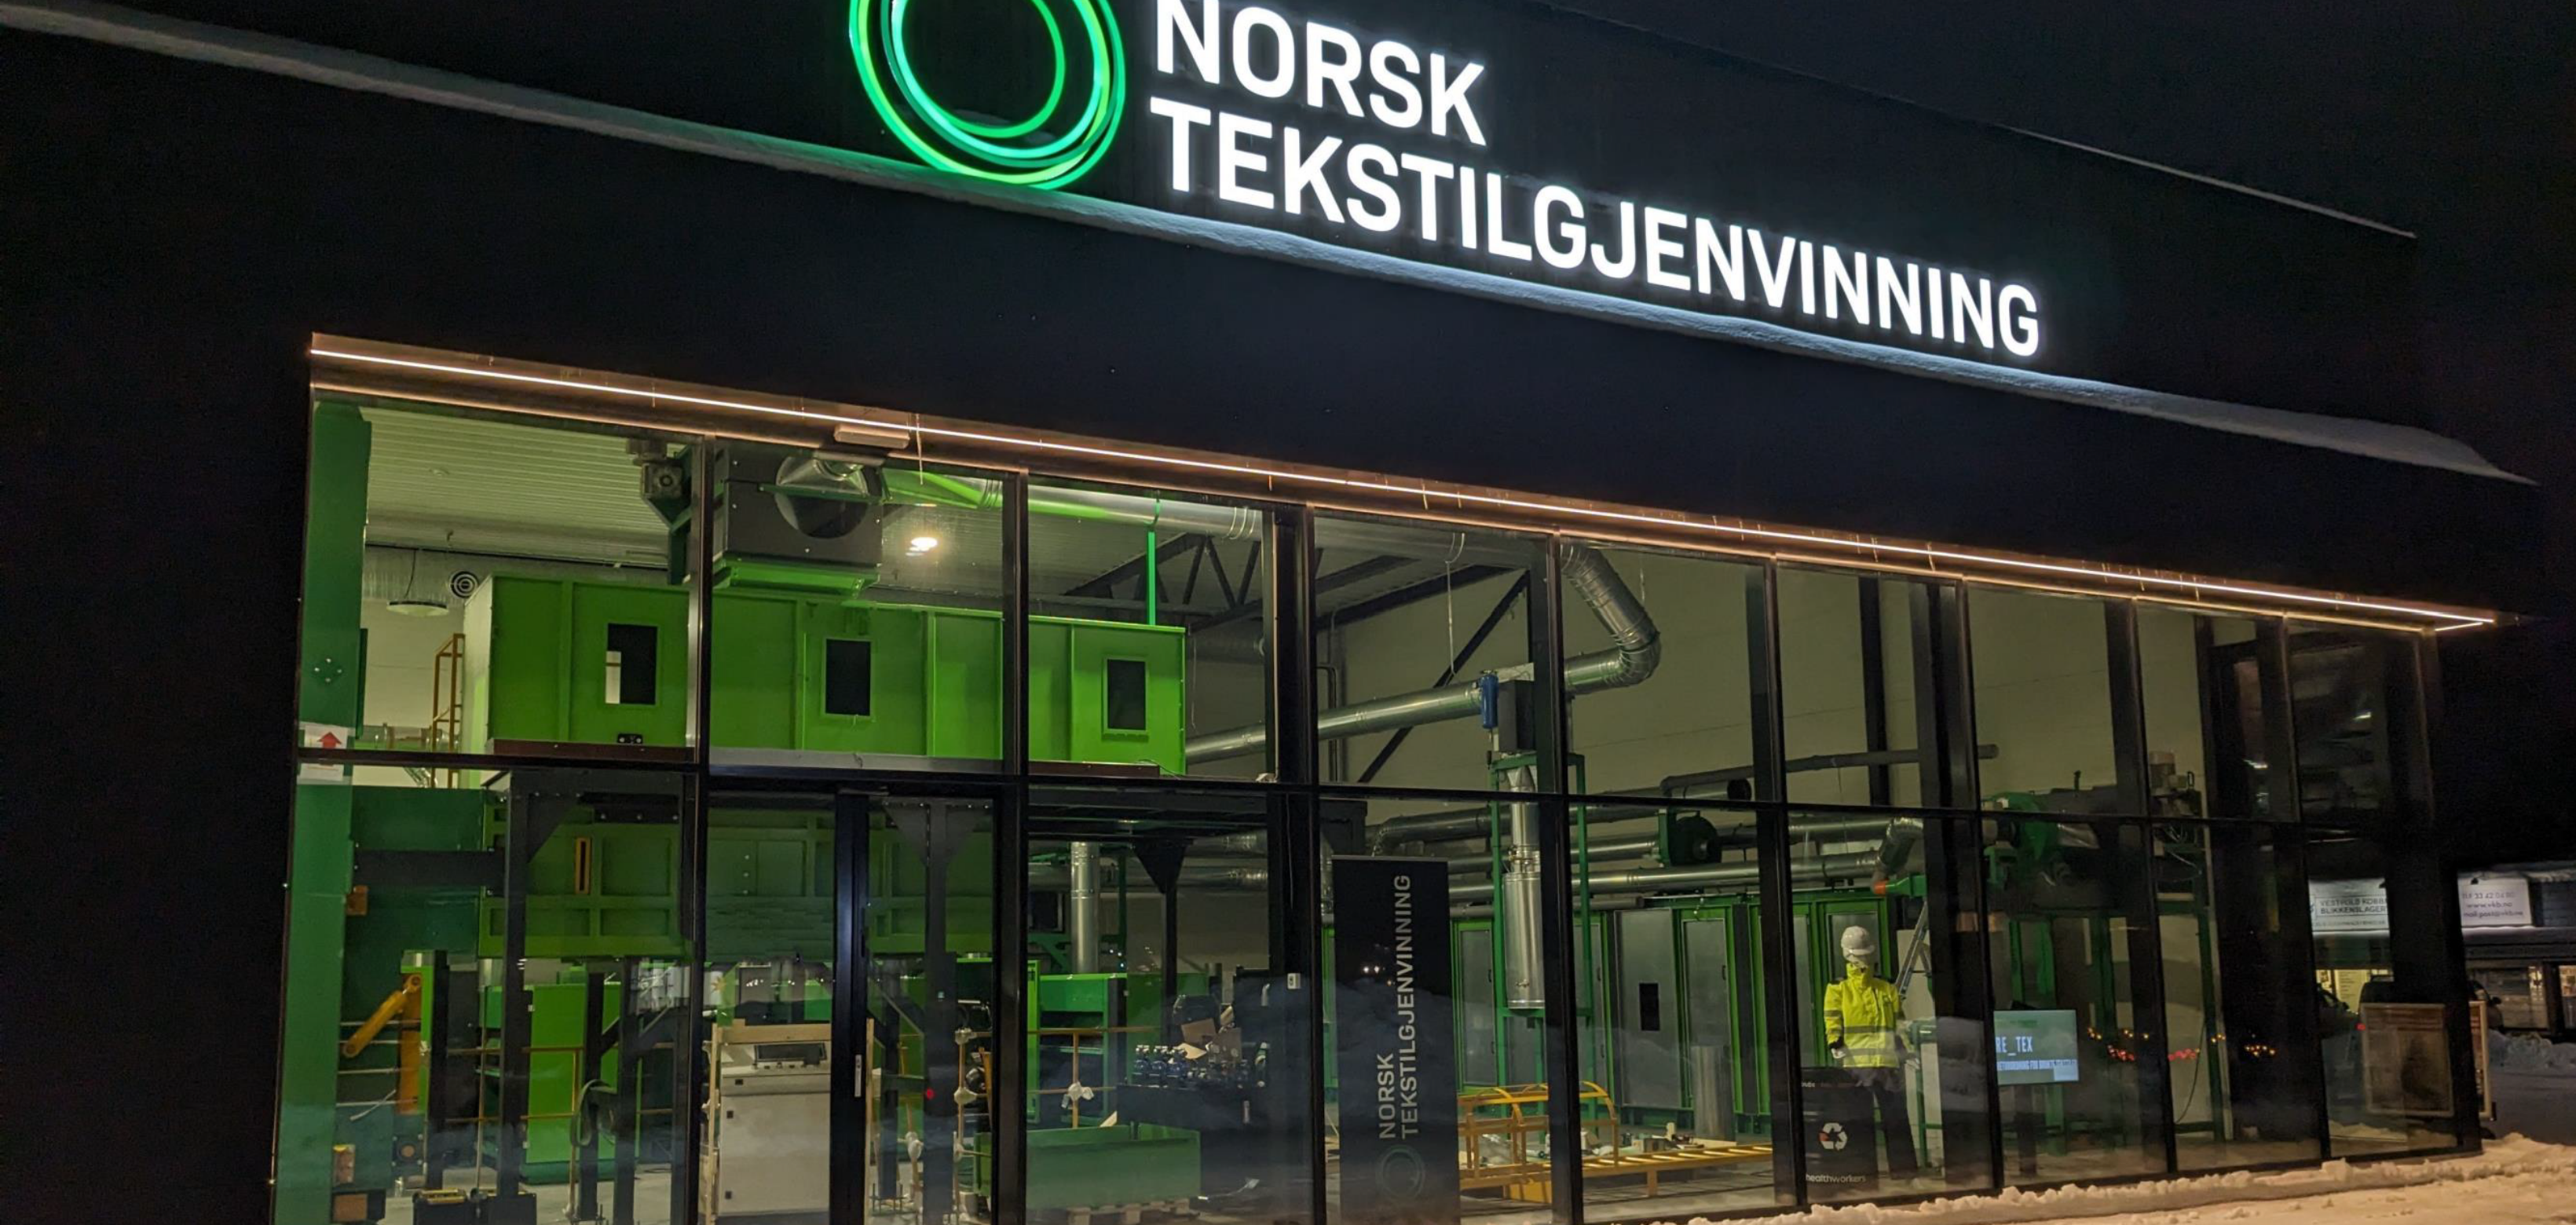 Norsk Tekstilgjenvinning